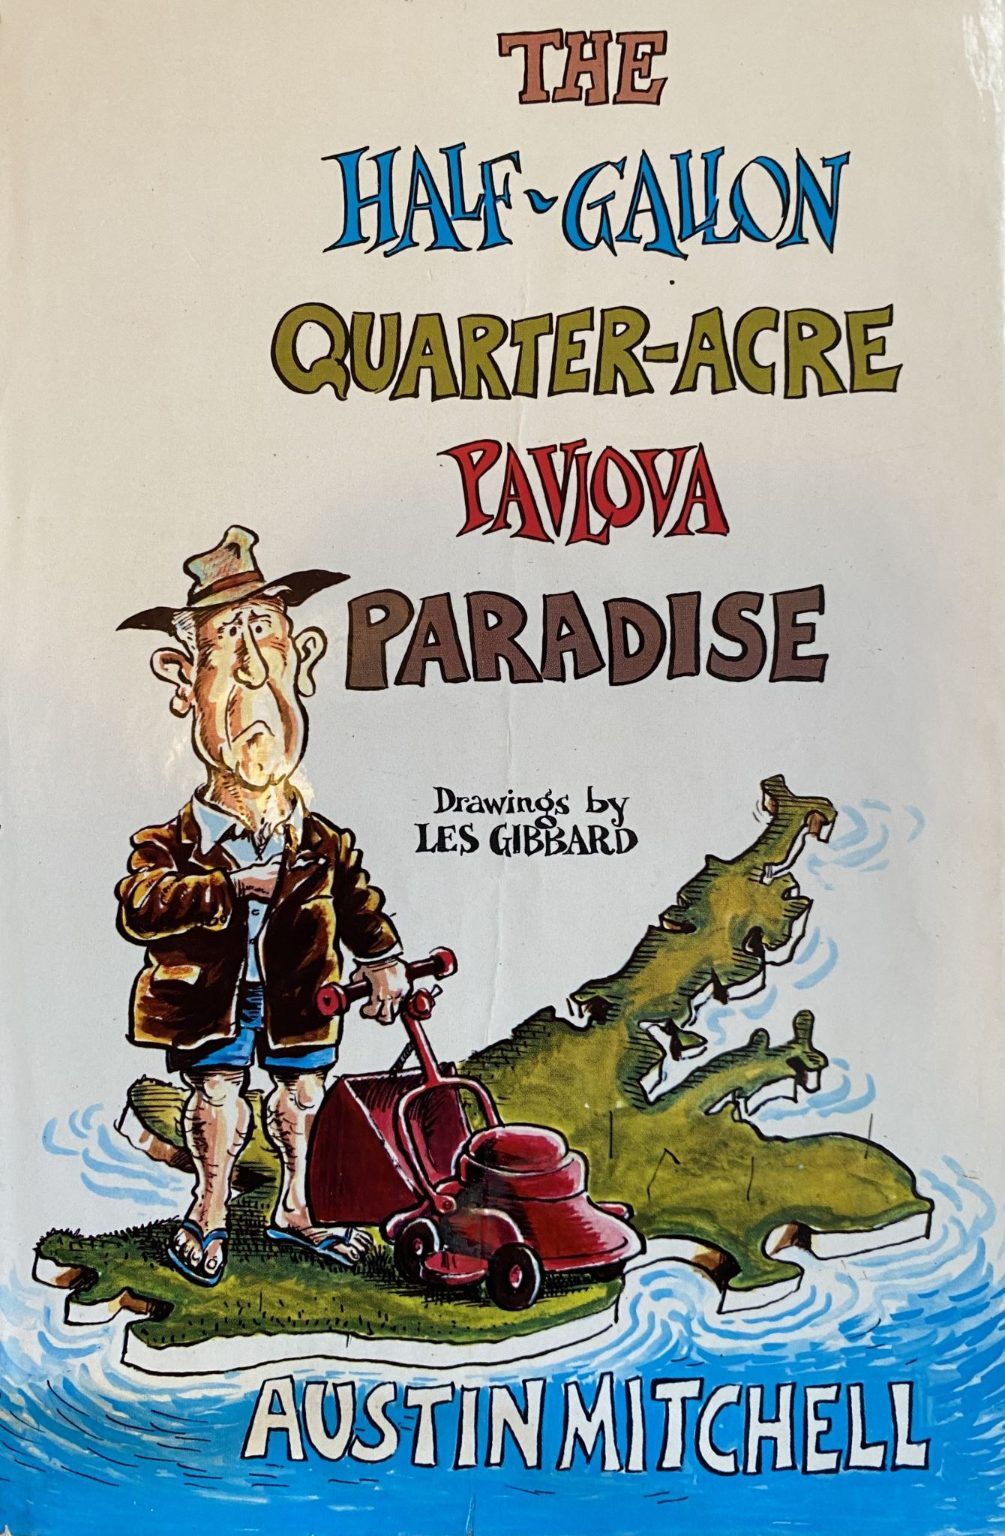 The Half Gallon Quarter Acre Pavlova Paradise